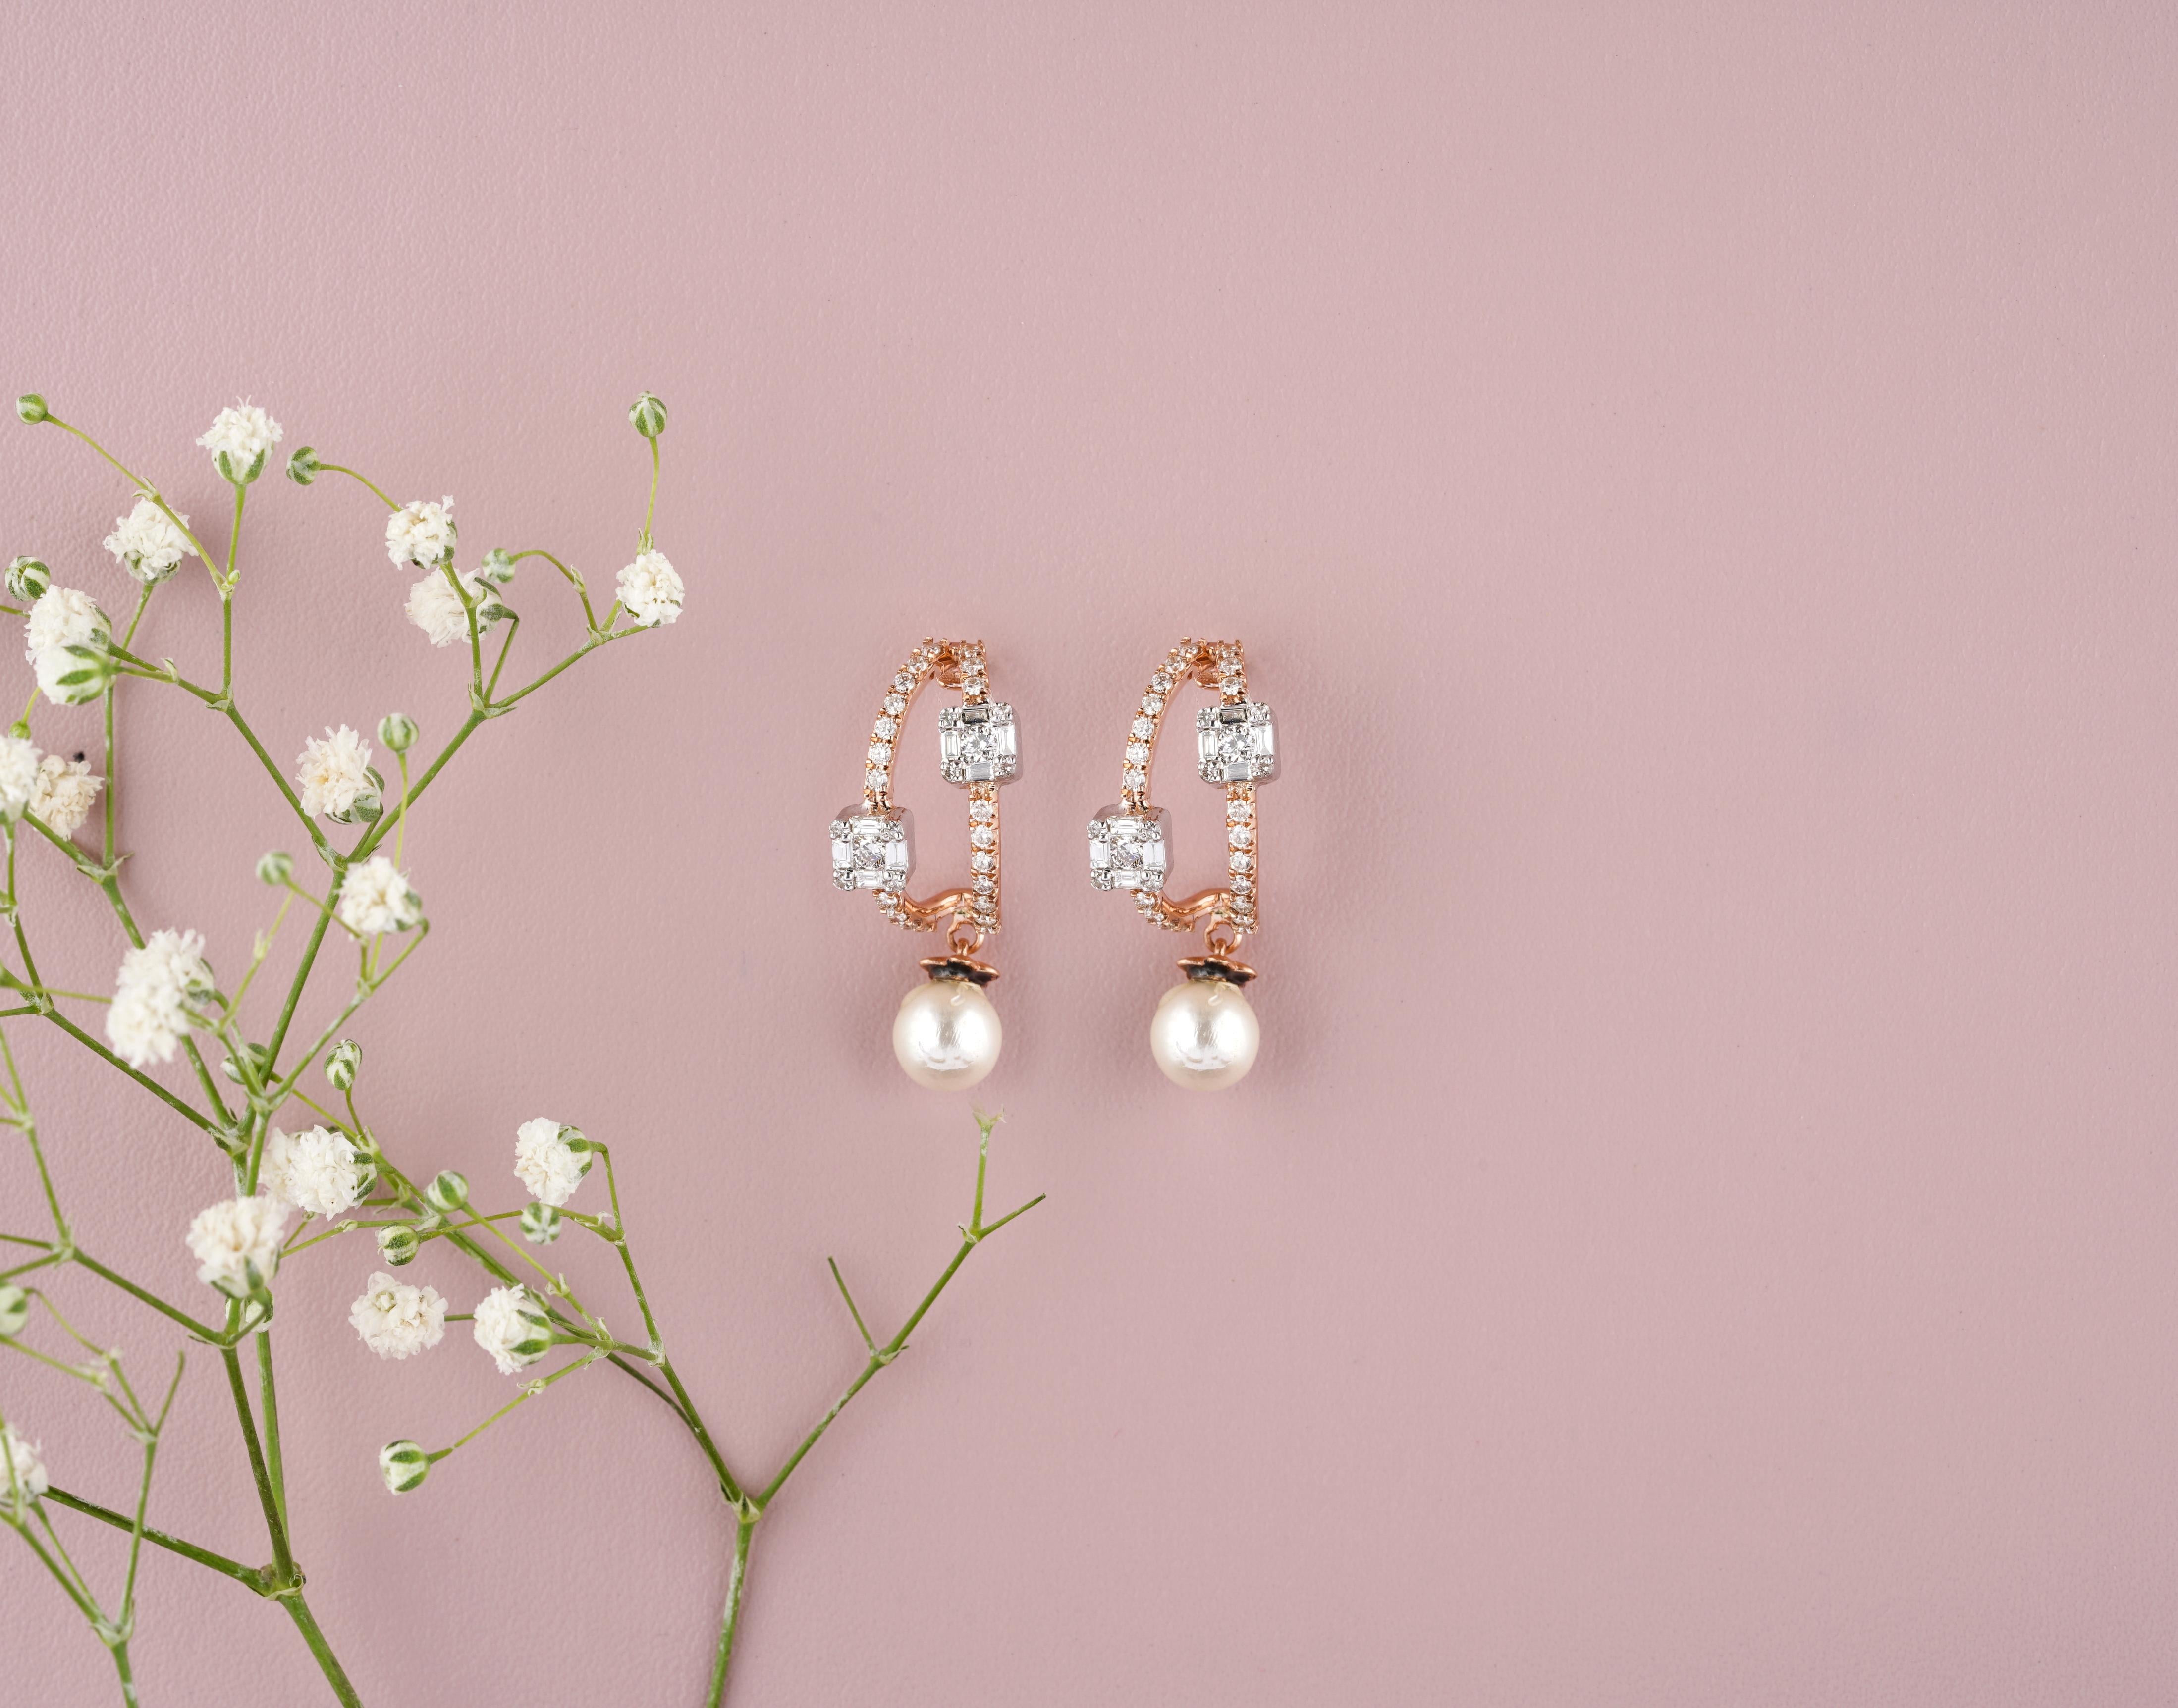 Les boucles d'oreilles Pearl Drop Diamond présentent un anneau en or rose, orné de trois diamants de taille émeraude régulièrement espacés sur le devant de l'anneau. Une perle lustrée pend gracieusement au bas de chaque anneau, ajoutant un élément